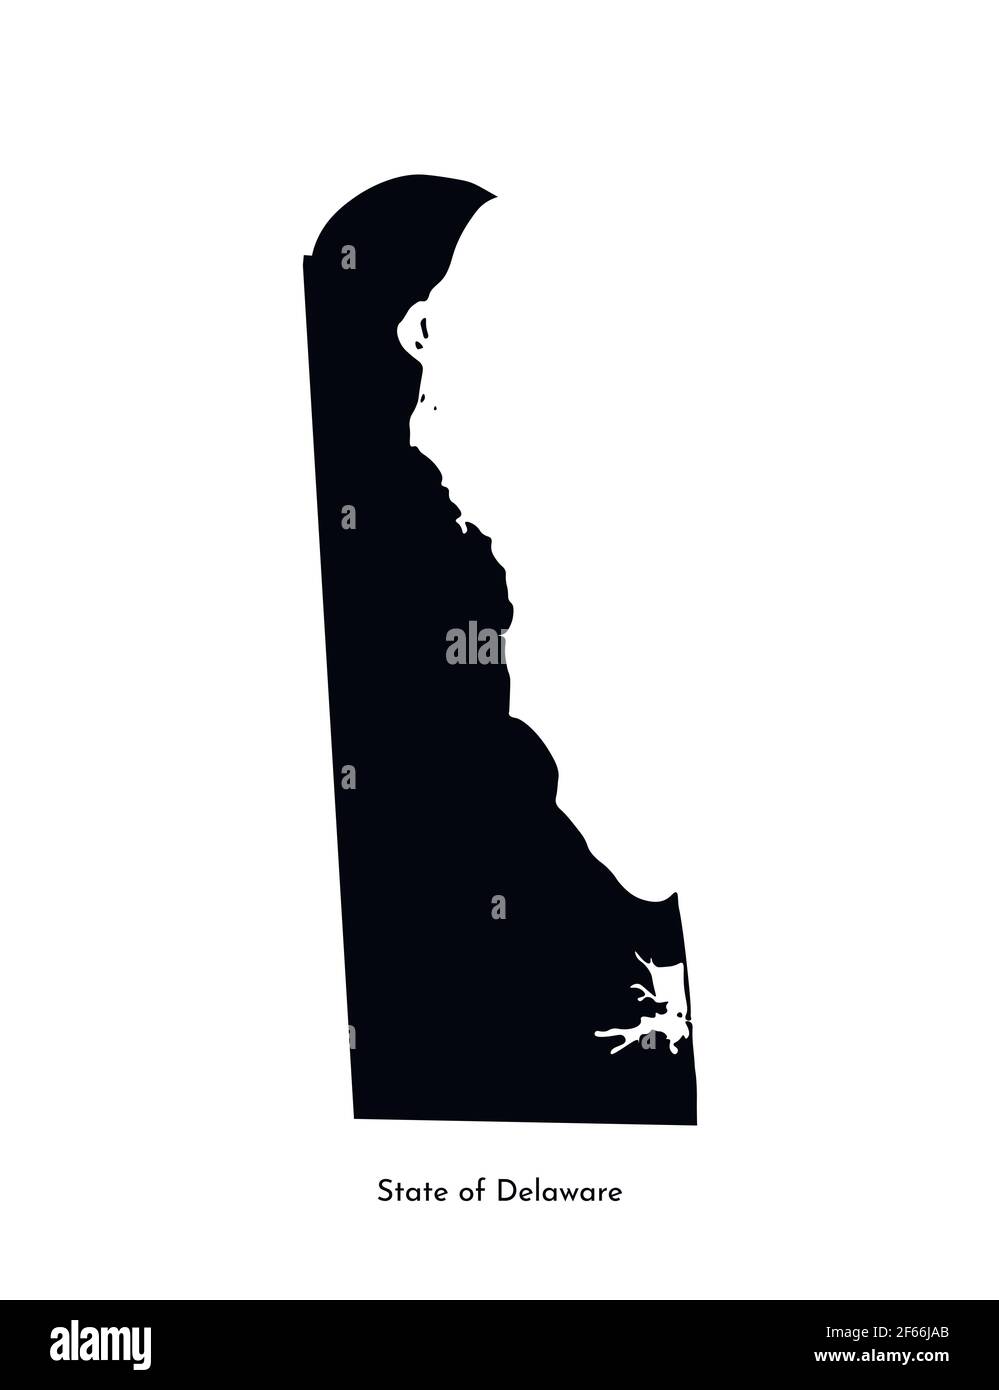 Vektor isolierte vereinfachte Illustration Symbol mit schwarzer Karte Silhouette von State of Delaware (USA). Weißer Hintergrund Stock Vektor